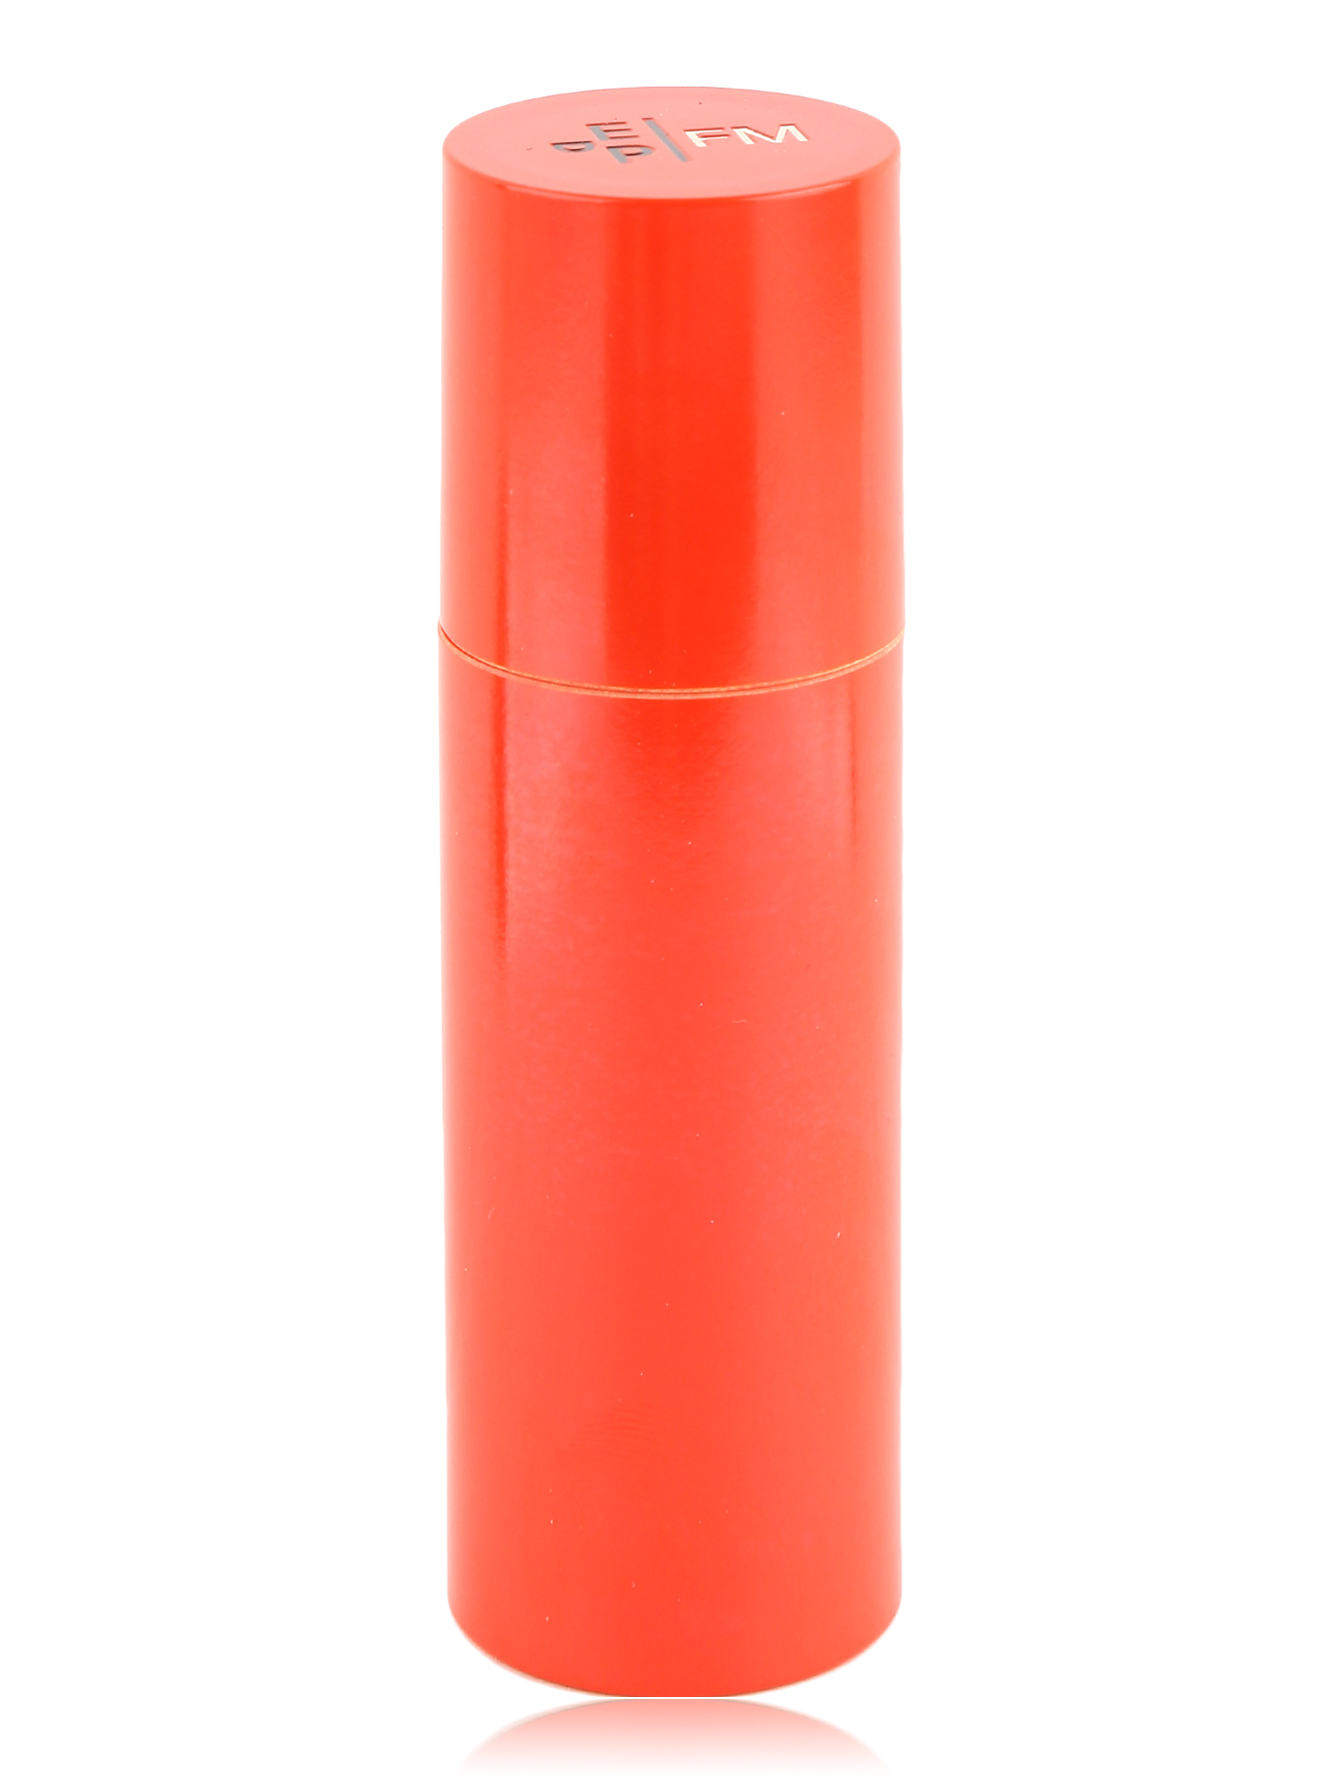 Контейнер для парфюма RED - Общий вид